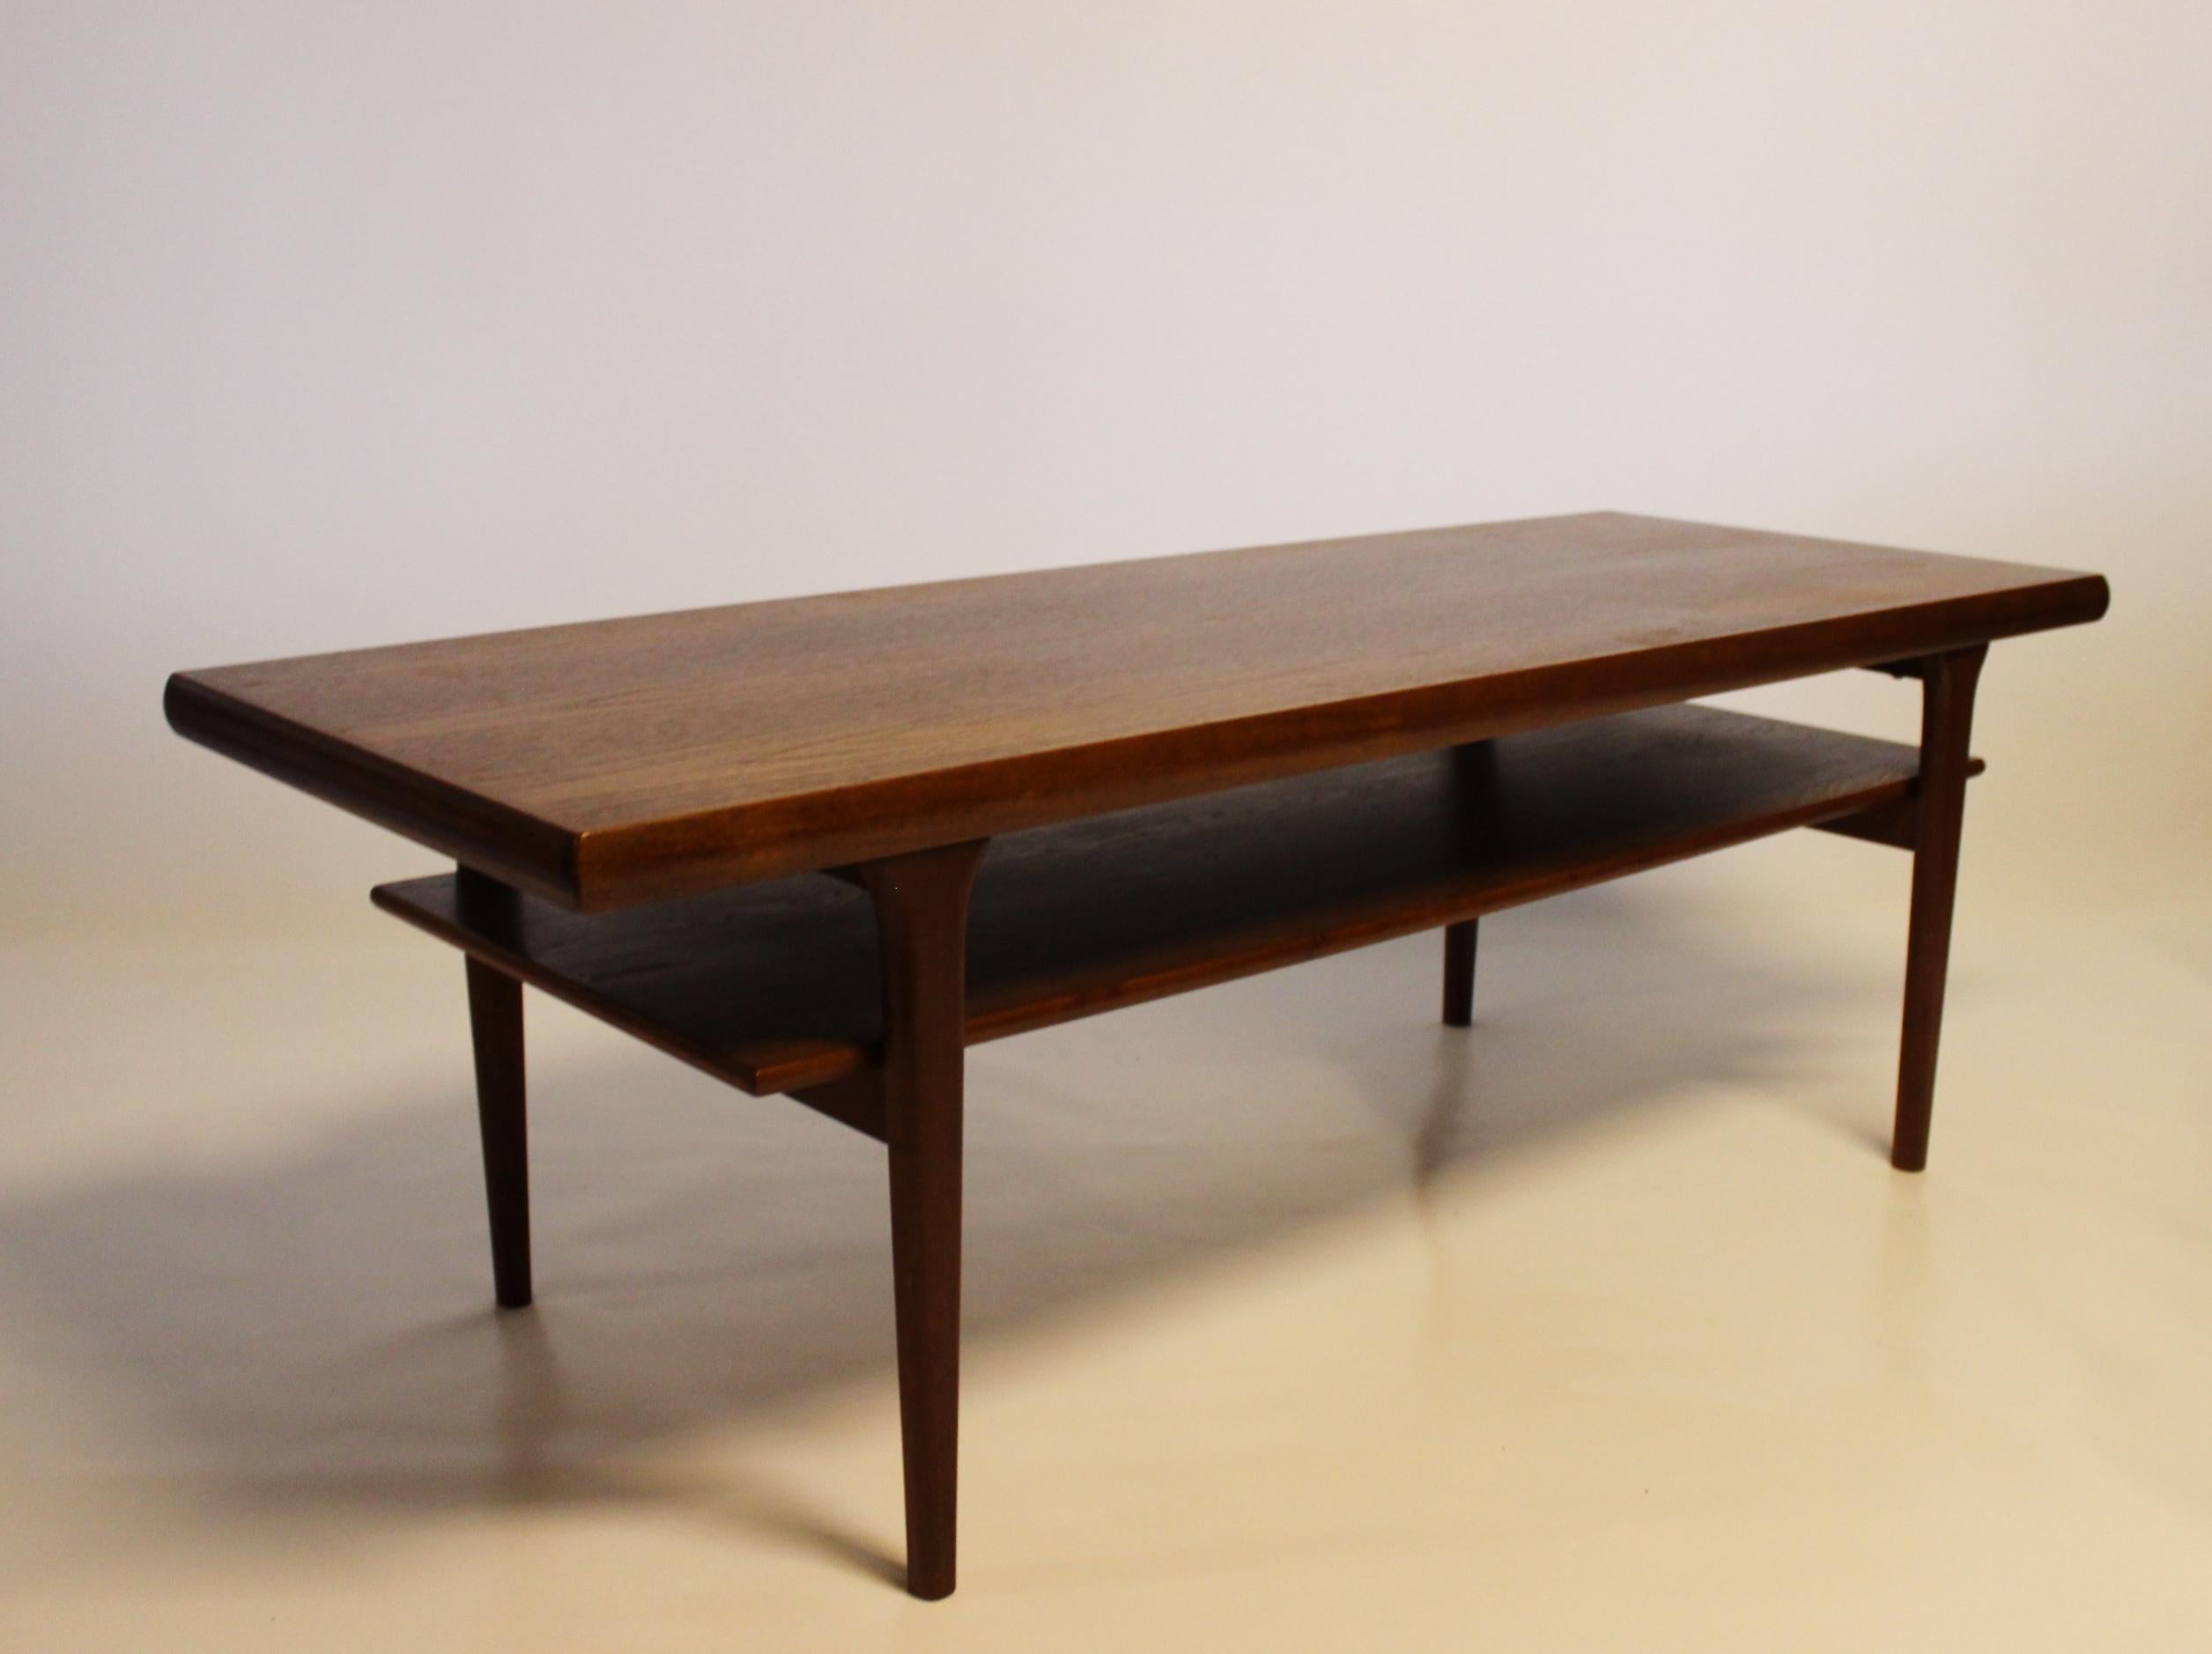 Elegante table basse avec étagère : Un exemple étonnant du design danois des années 1960, fabriqué avec expertise en teck.

Cette table basse est une représentation emblématique de l'éthique du design de l'époque, caractérisée par ses lignes